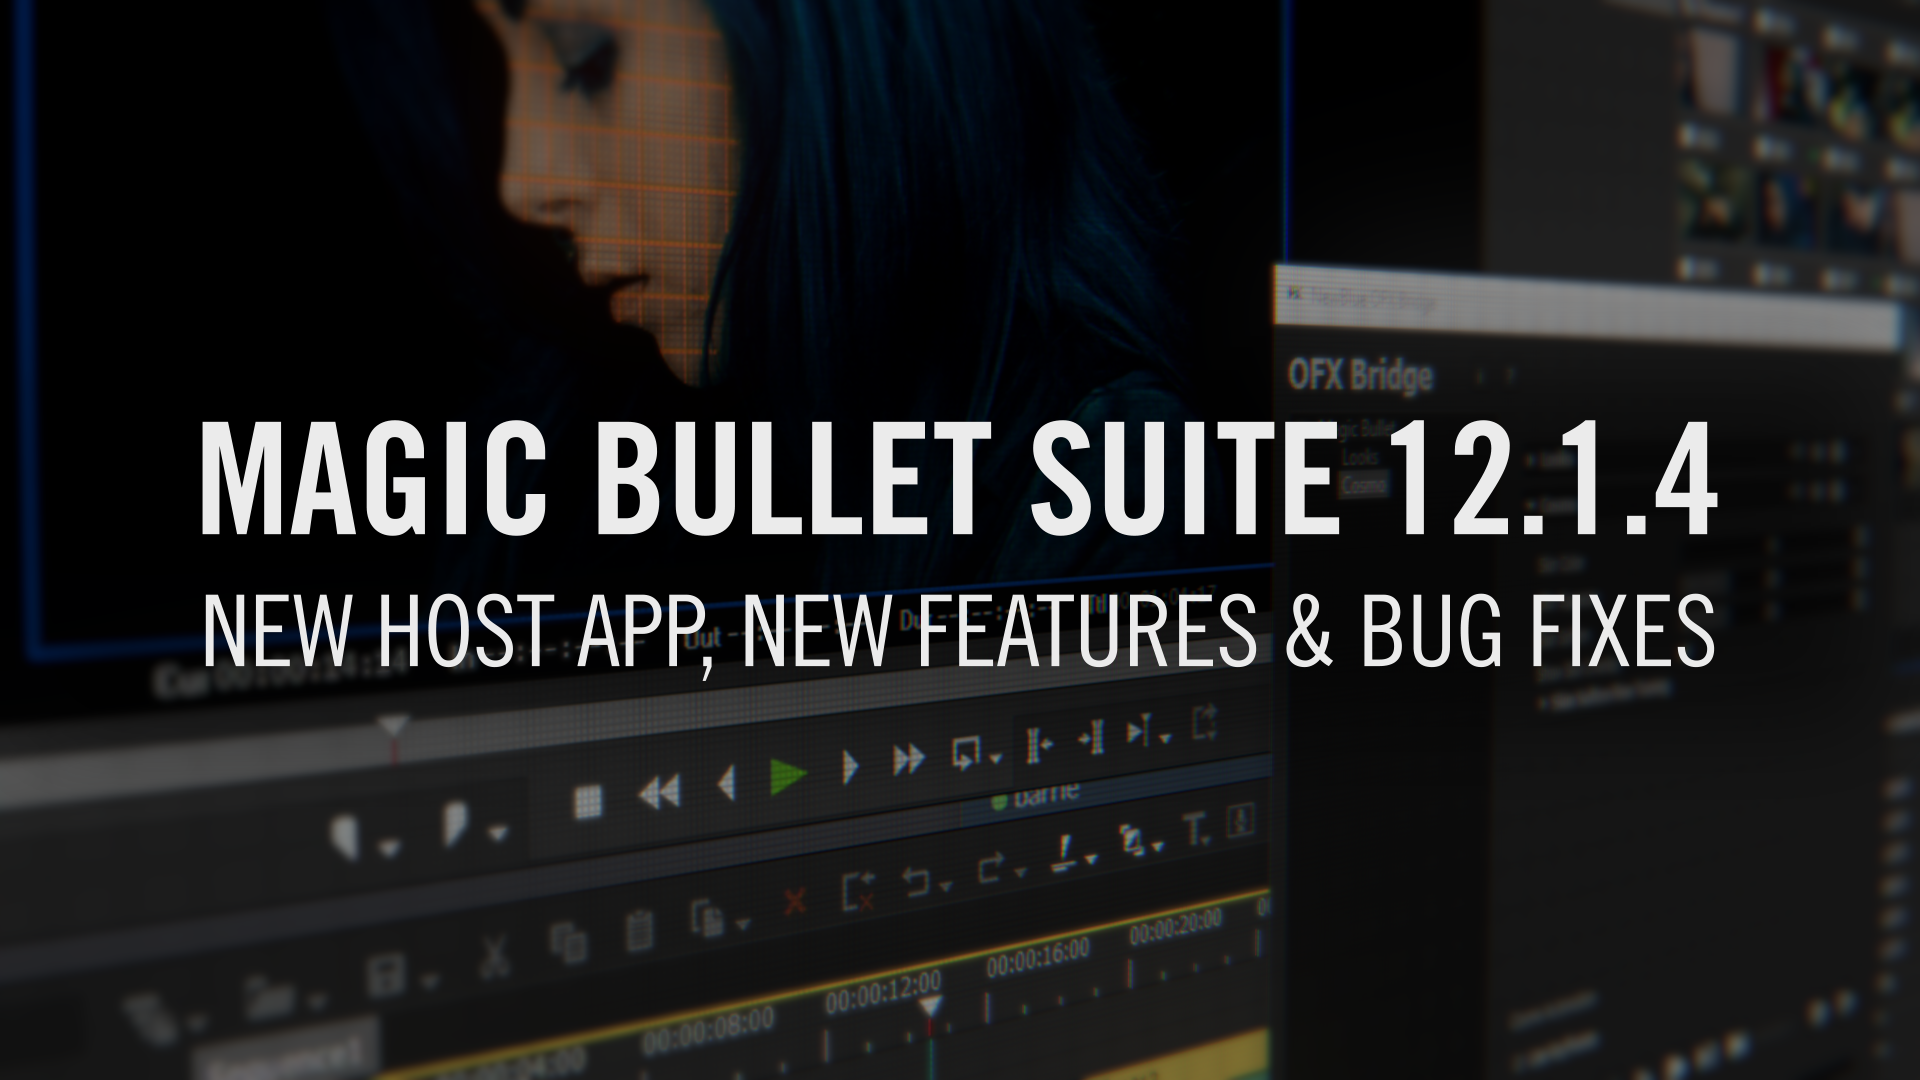 Magic bullet suite 12 mac download windows 10